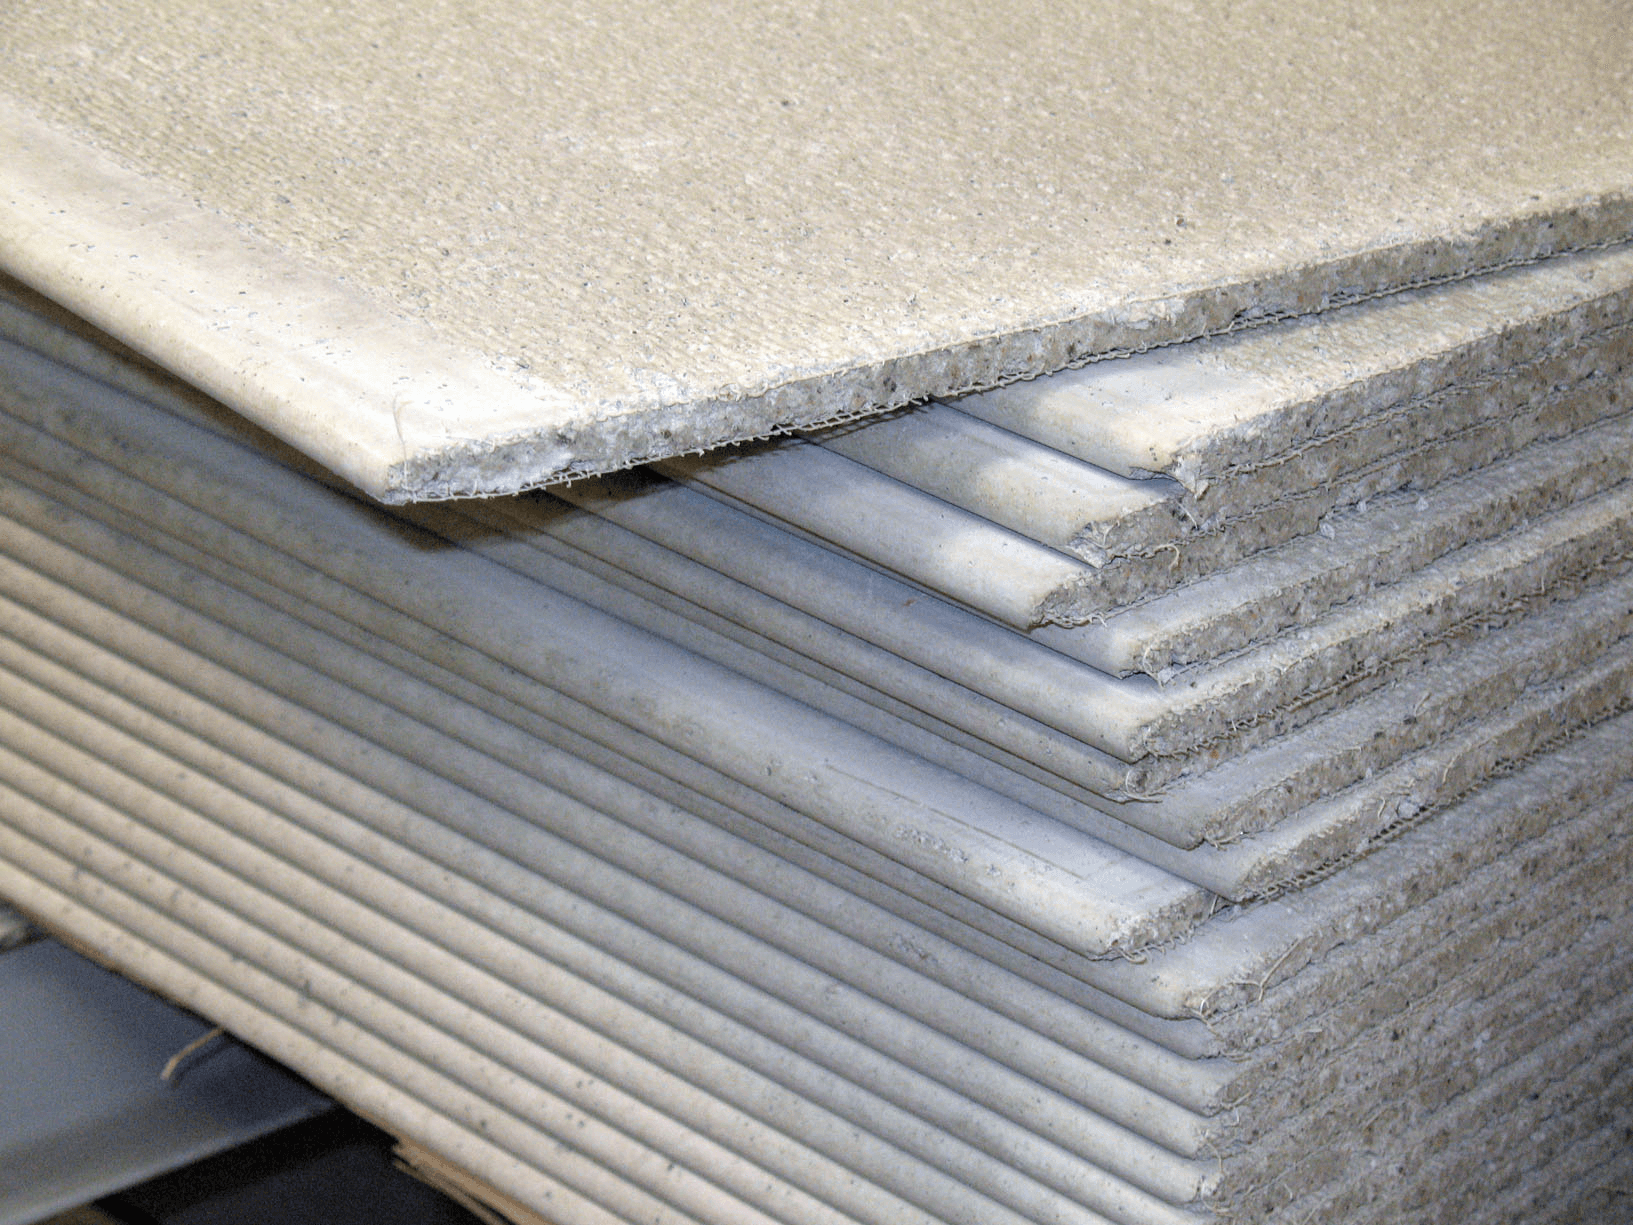 Rubber cement - Wikipedia